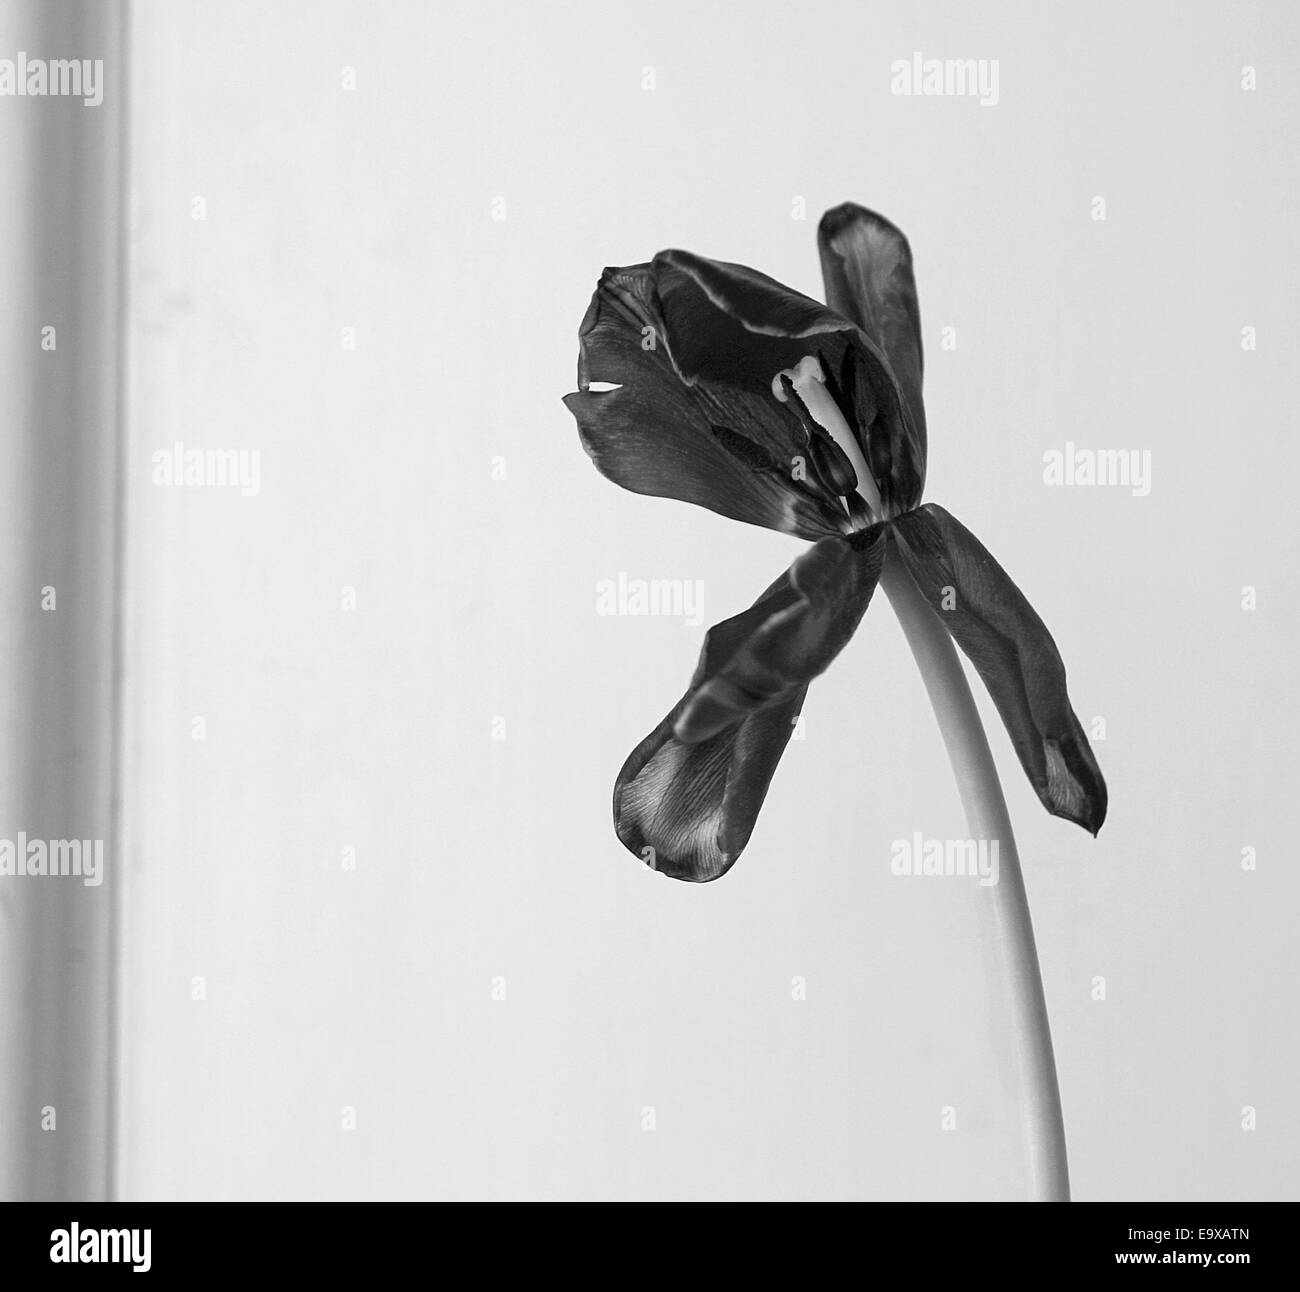 A dying tulip photographie noir et blanc sur fond uni Banque D'Images